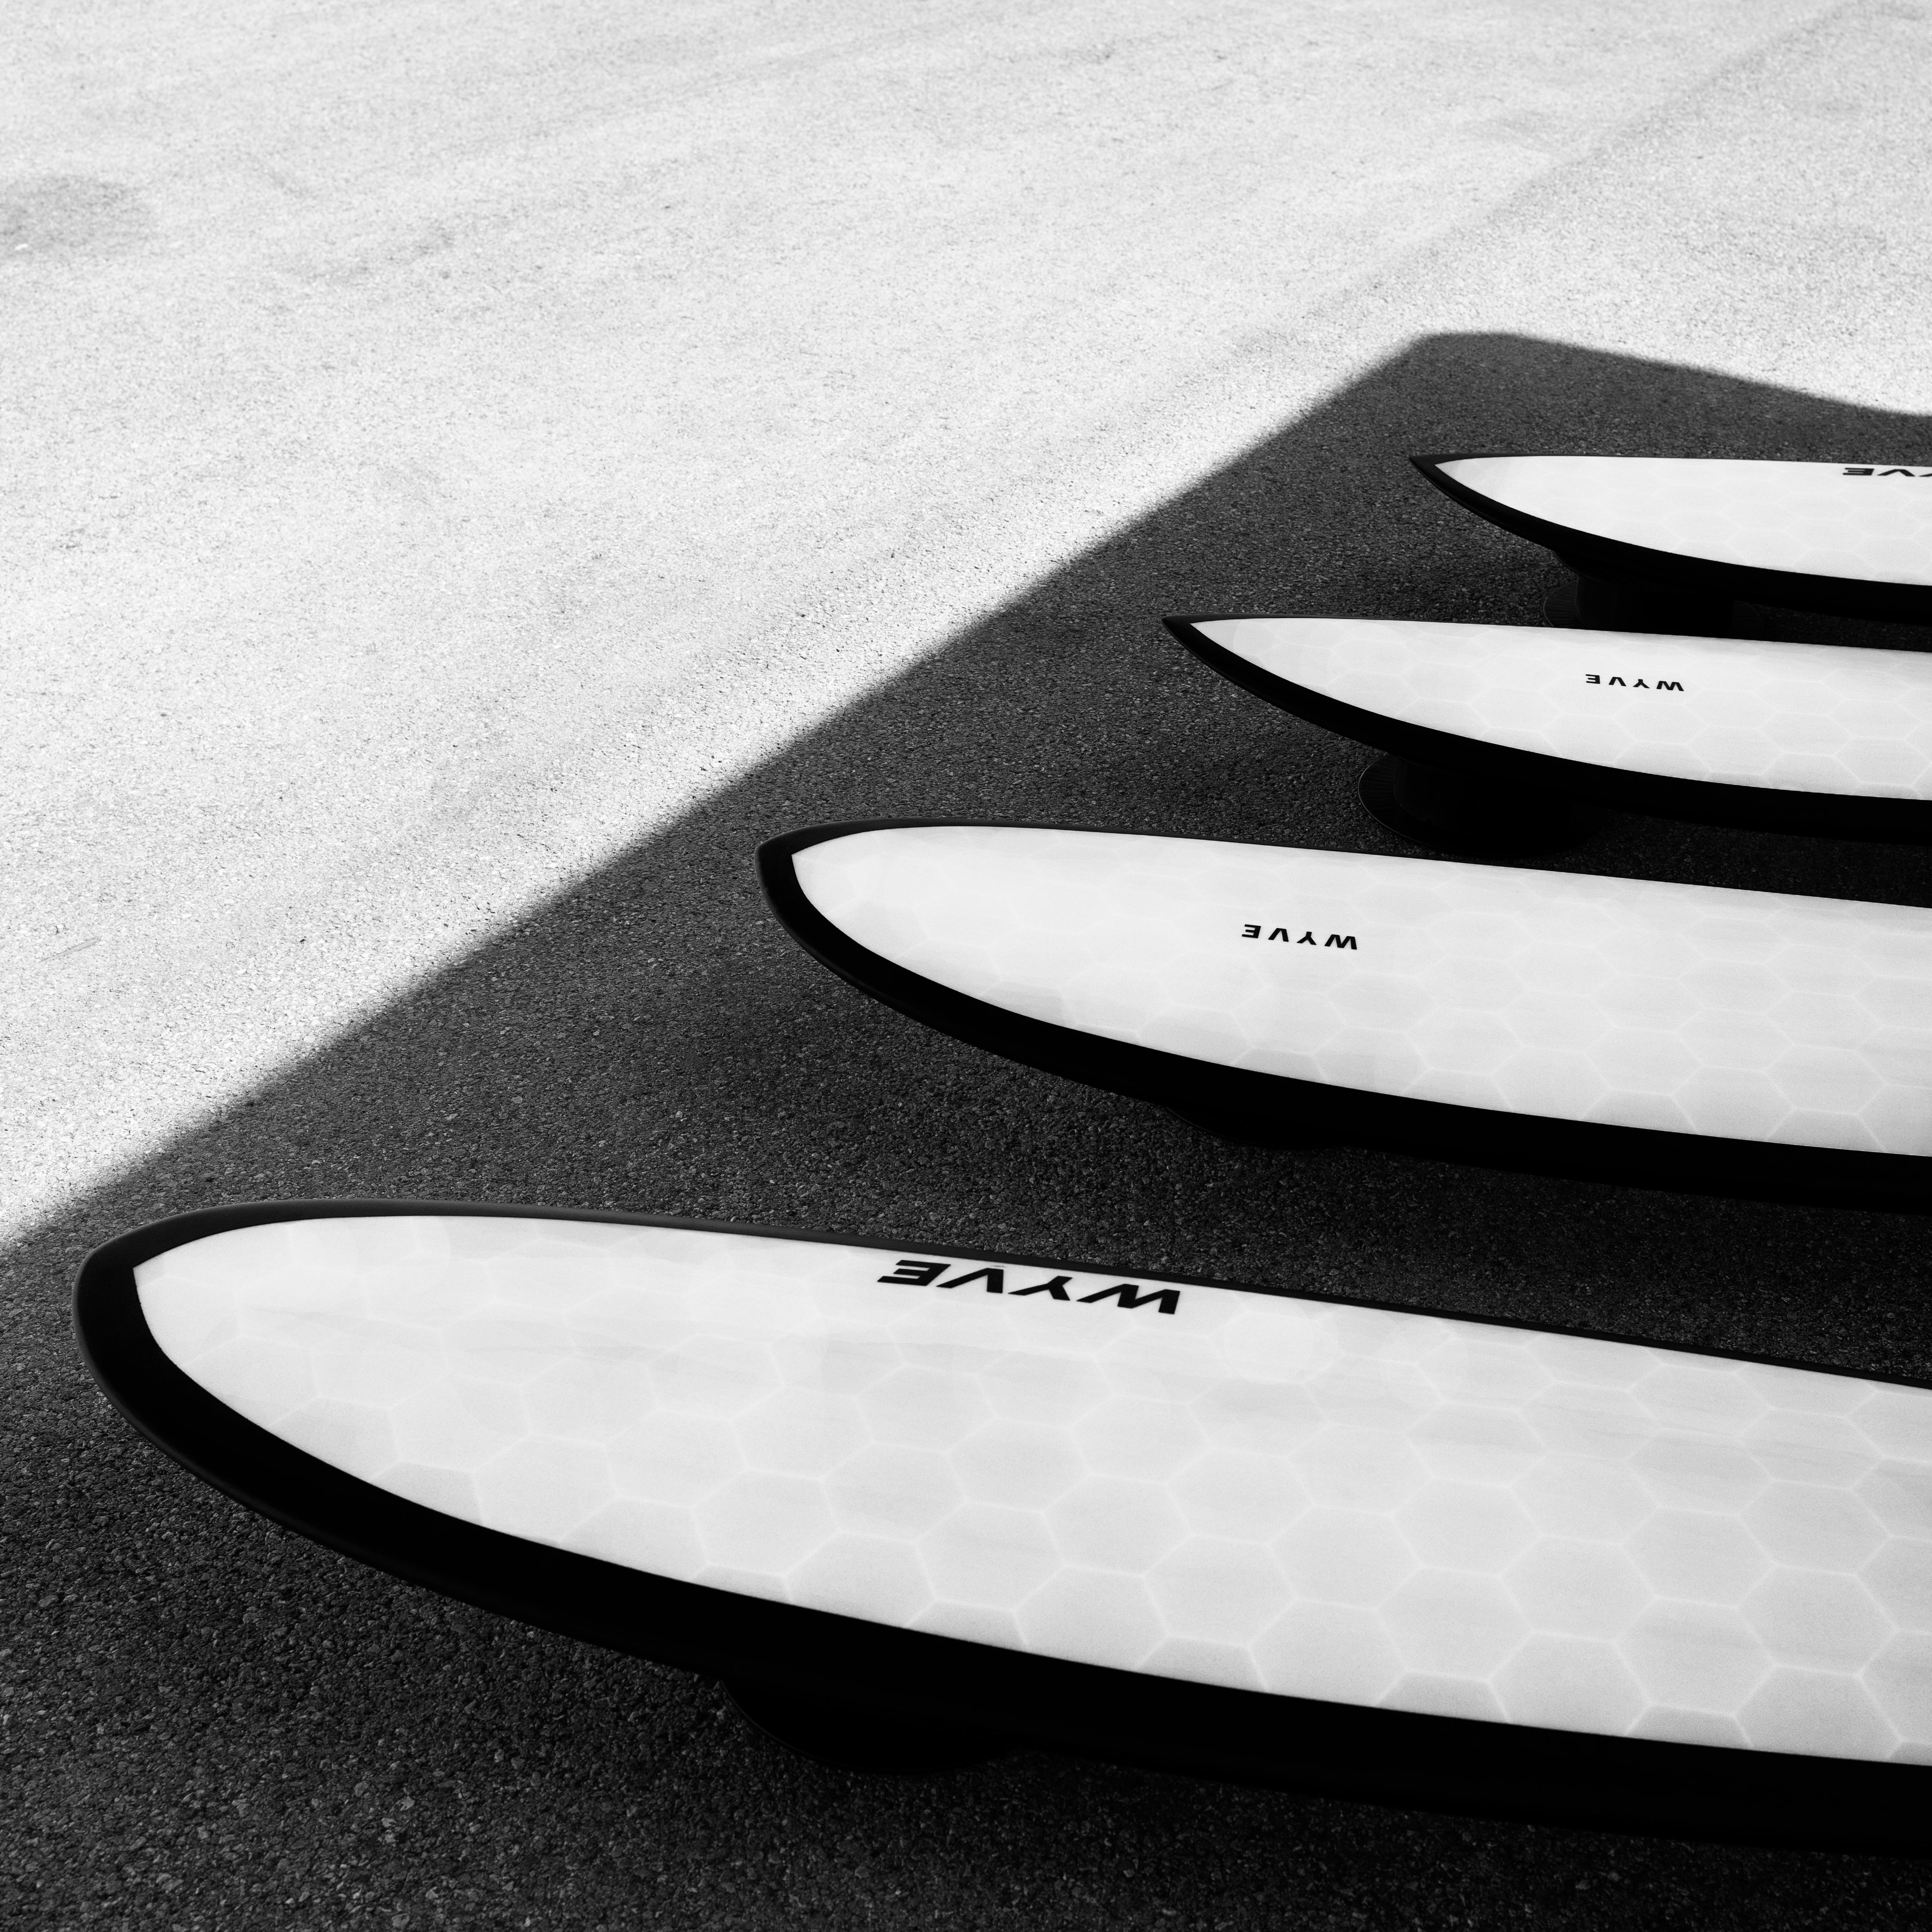 Collection Refurb Wyve : Surfez avec Confiance à Prix Avantageux ) -Planche de surf pas cher